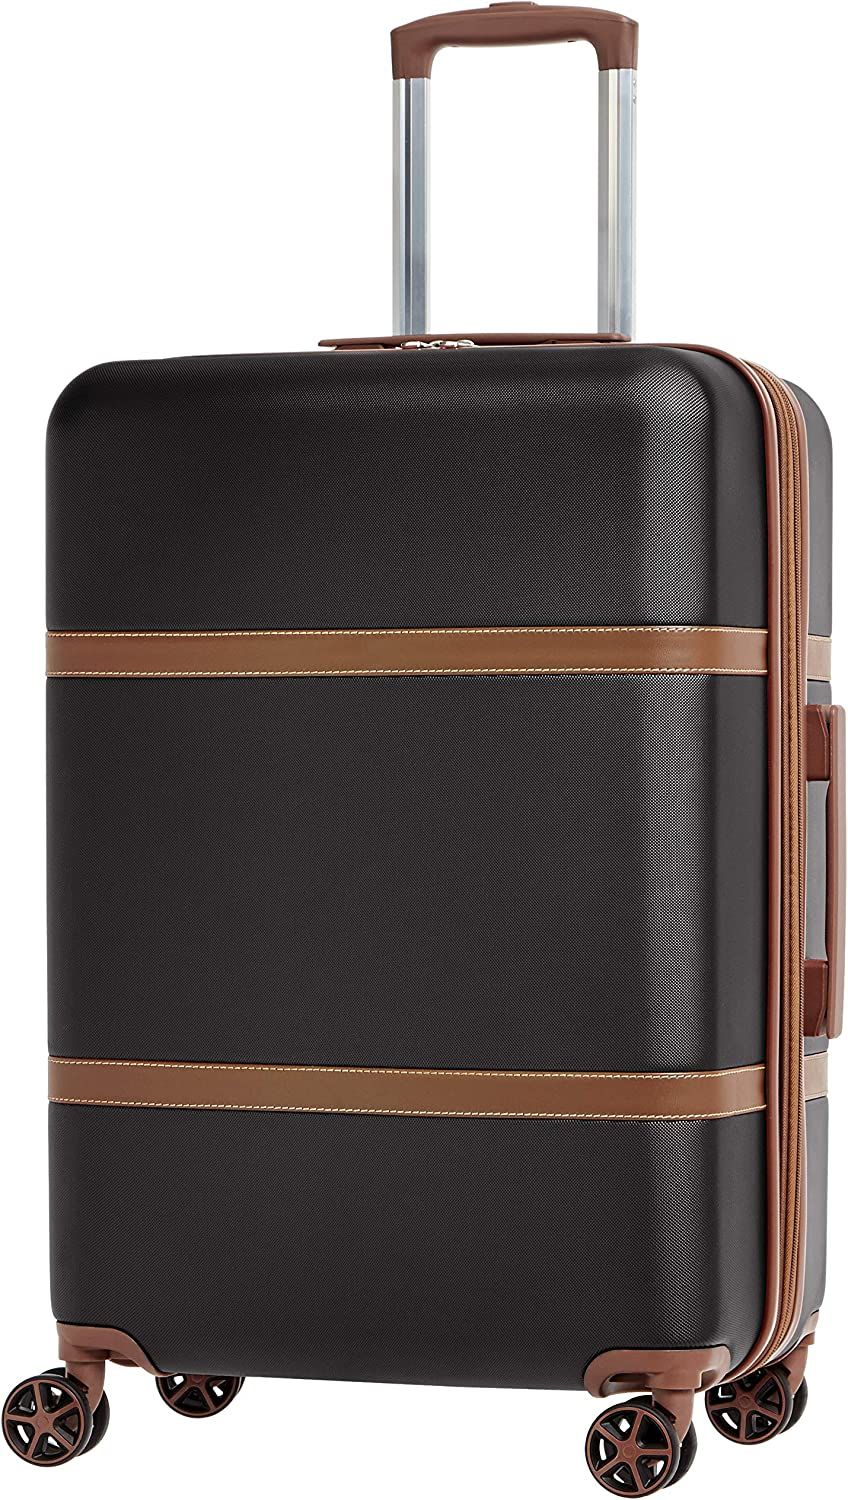 AmazonBasics Vienna Spinner Suitcase Luggage - Expandable with Wheels - 26.7 Inch, Black | Amazon (US)